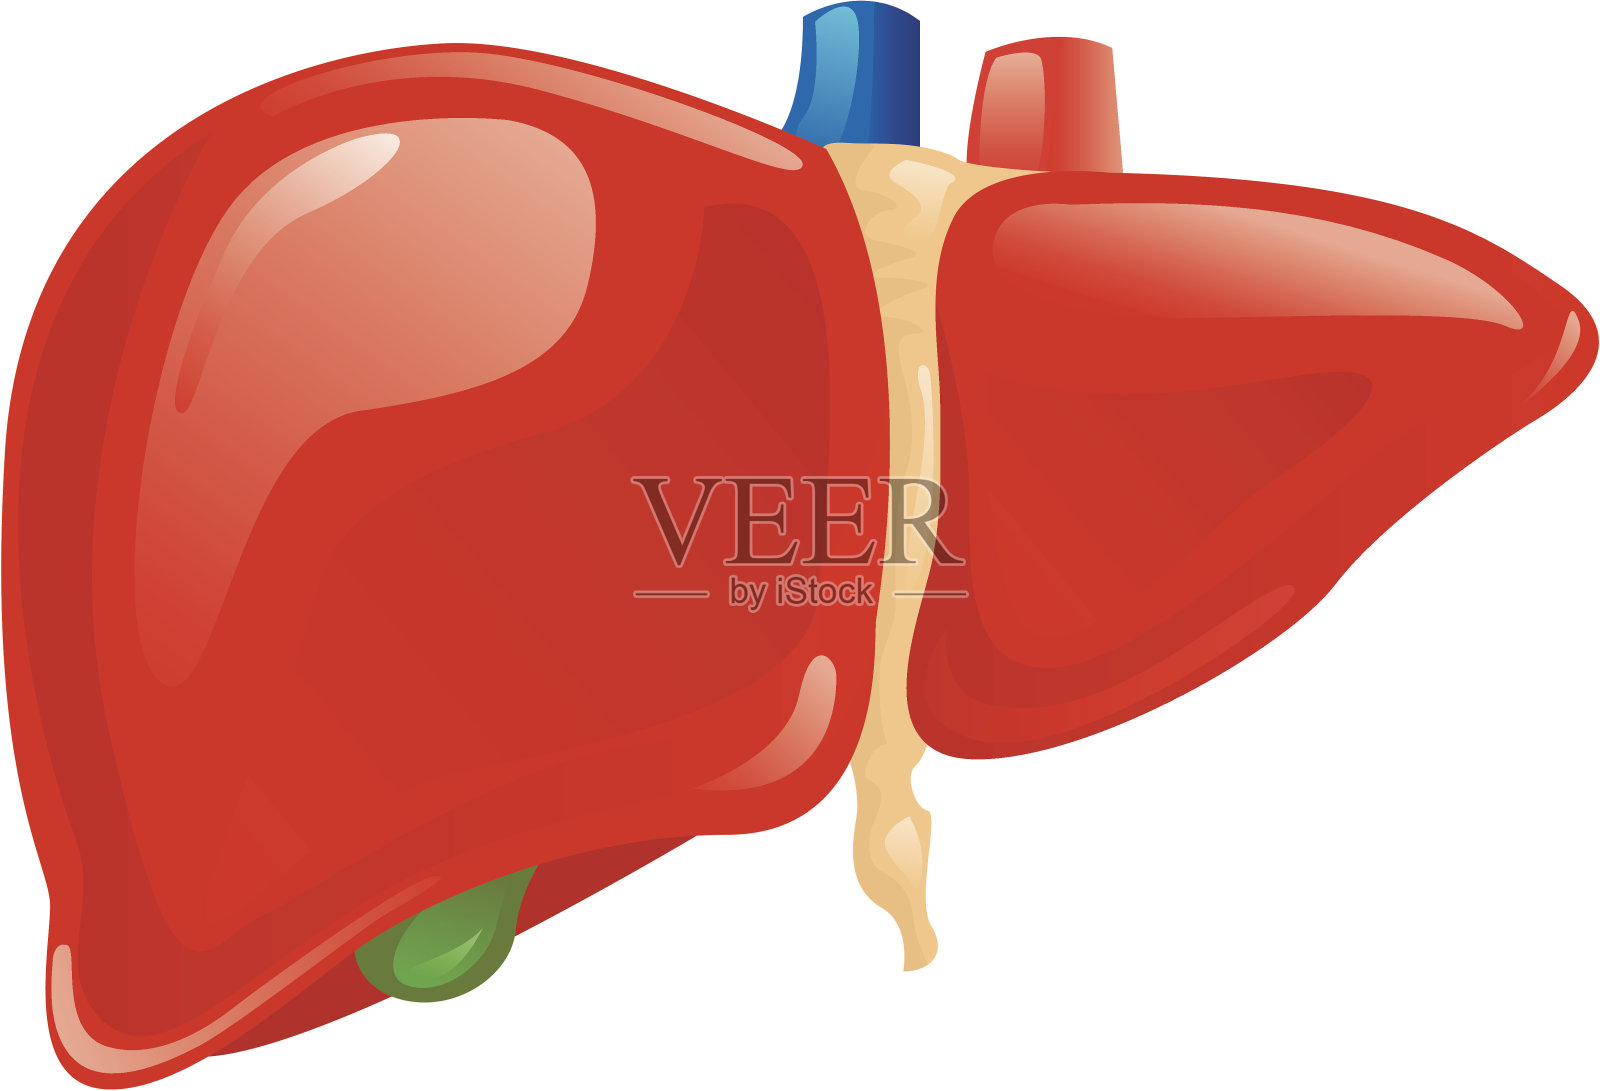 肝脏的基本解剖及生理...|肝细胞|胆红素|肝脏|解剖|胆汁|代谢|激素|-健康界